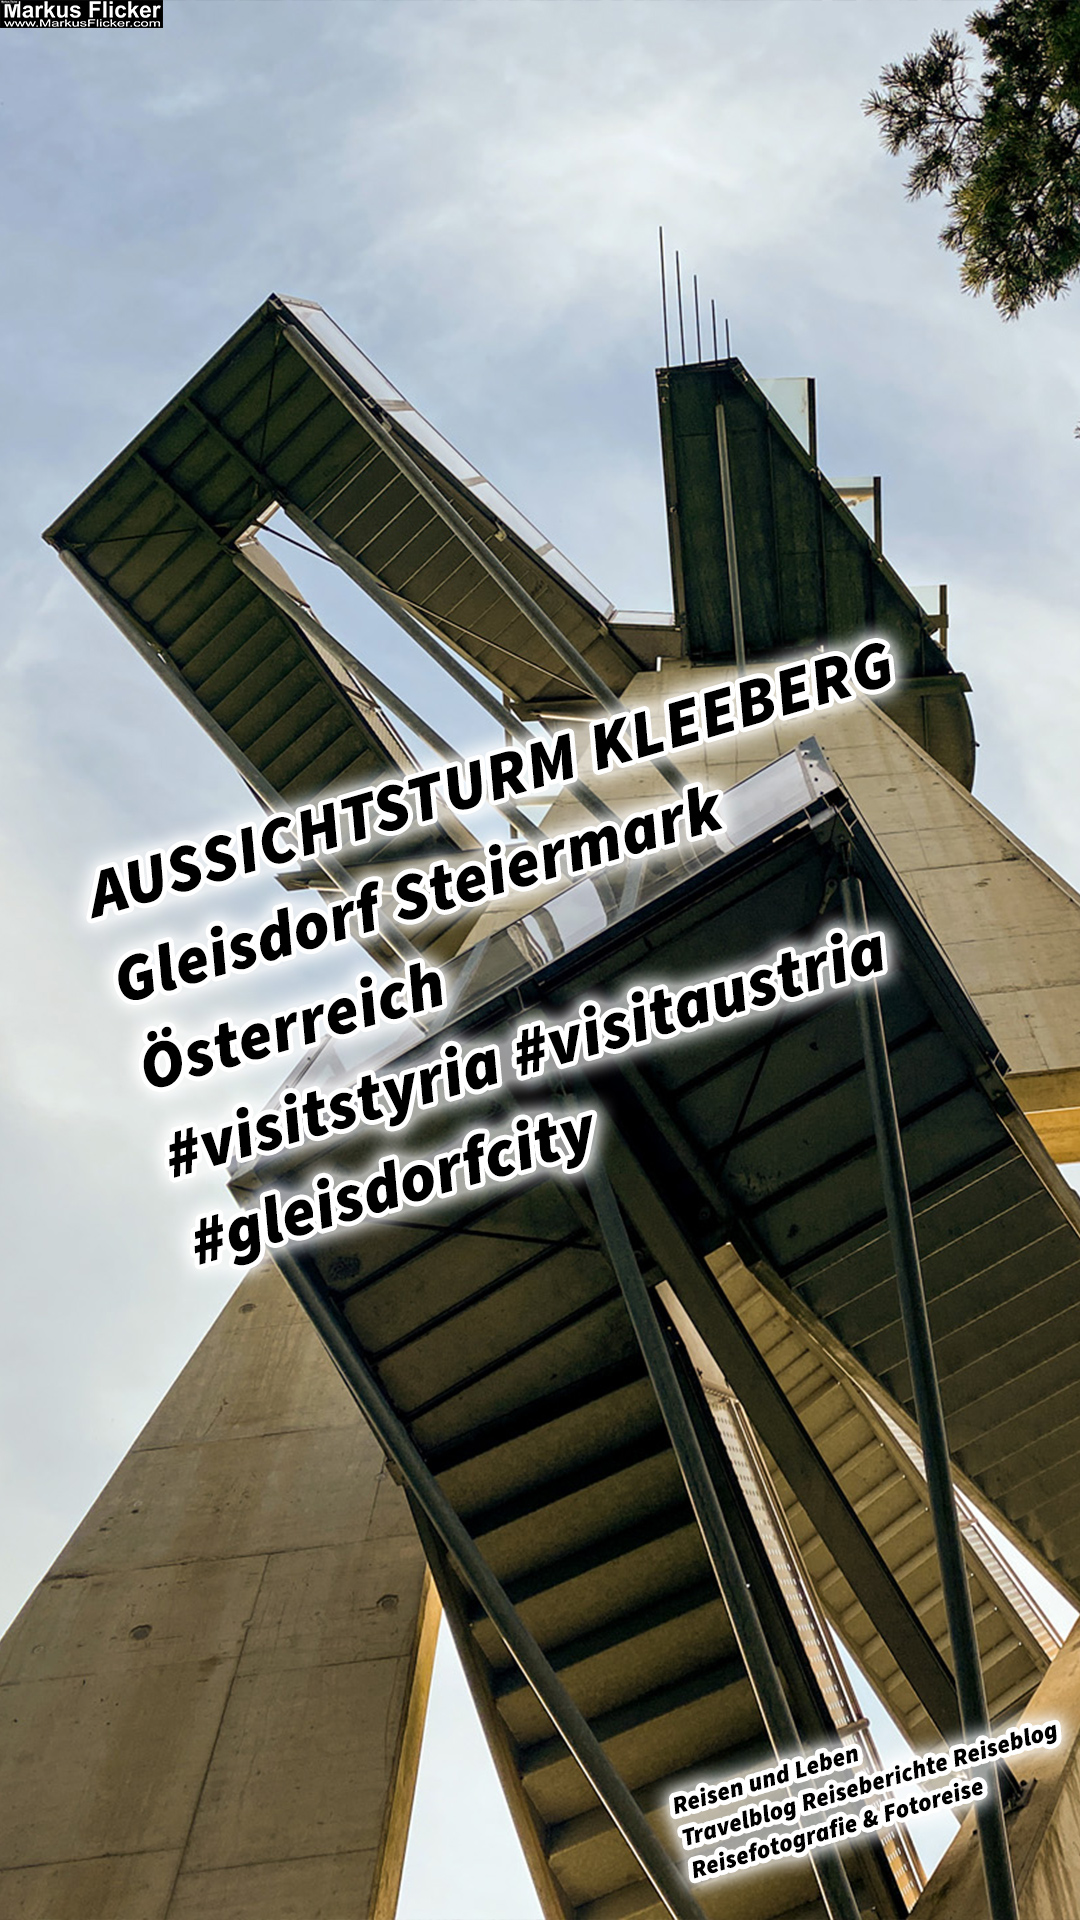 AUSSICHTSTURM KLEEBERG Gleisdorf Steiermark Österreich #visitstyria #visitaustria #gleisdorfcity